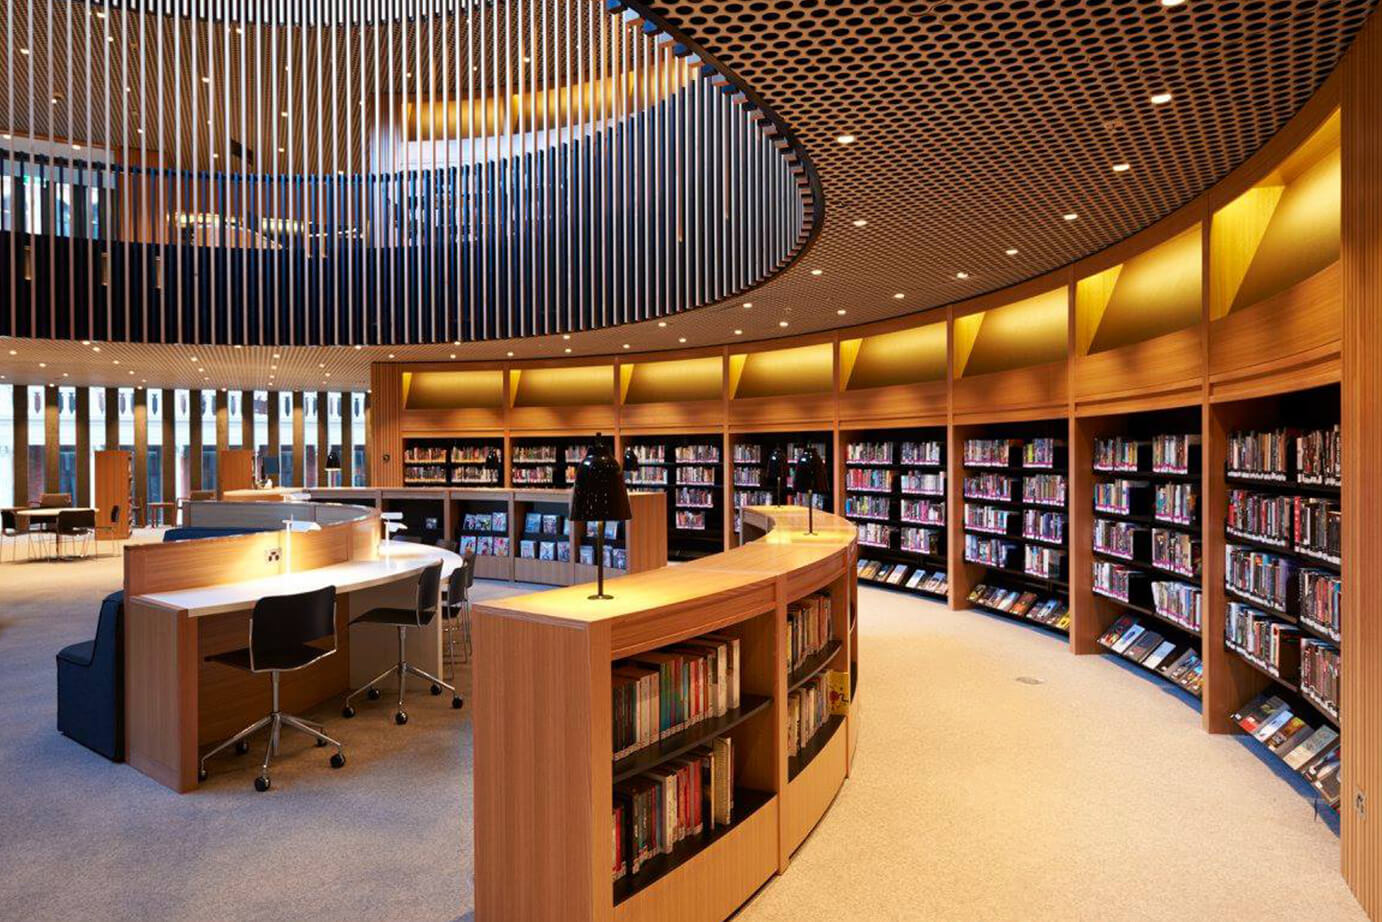 Ld library. Библиотека Японии читальный зал. Йельский университет библиотека. Современная библиотека. Интерьер современной библиотеки.